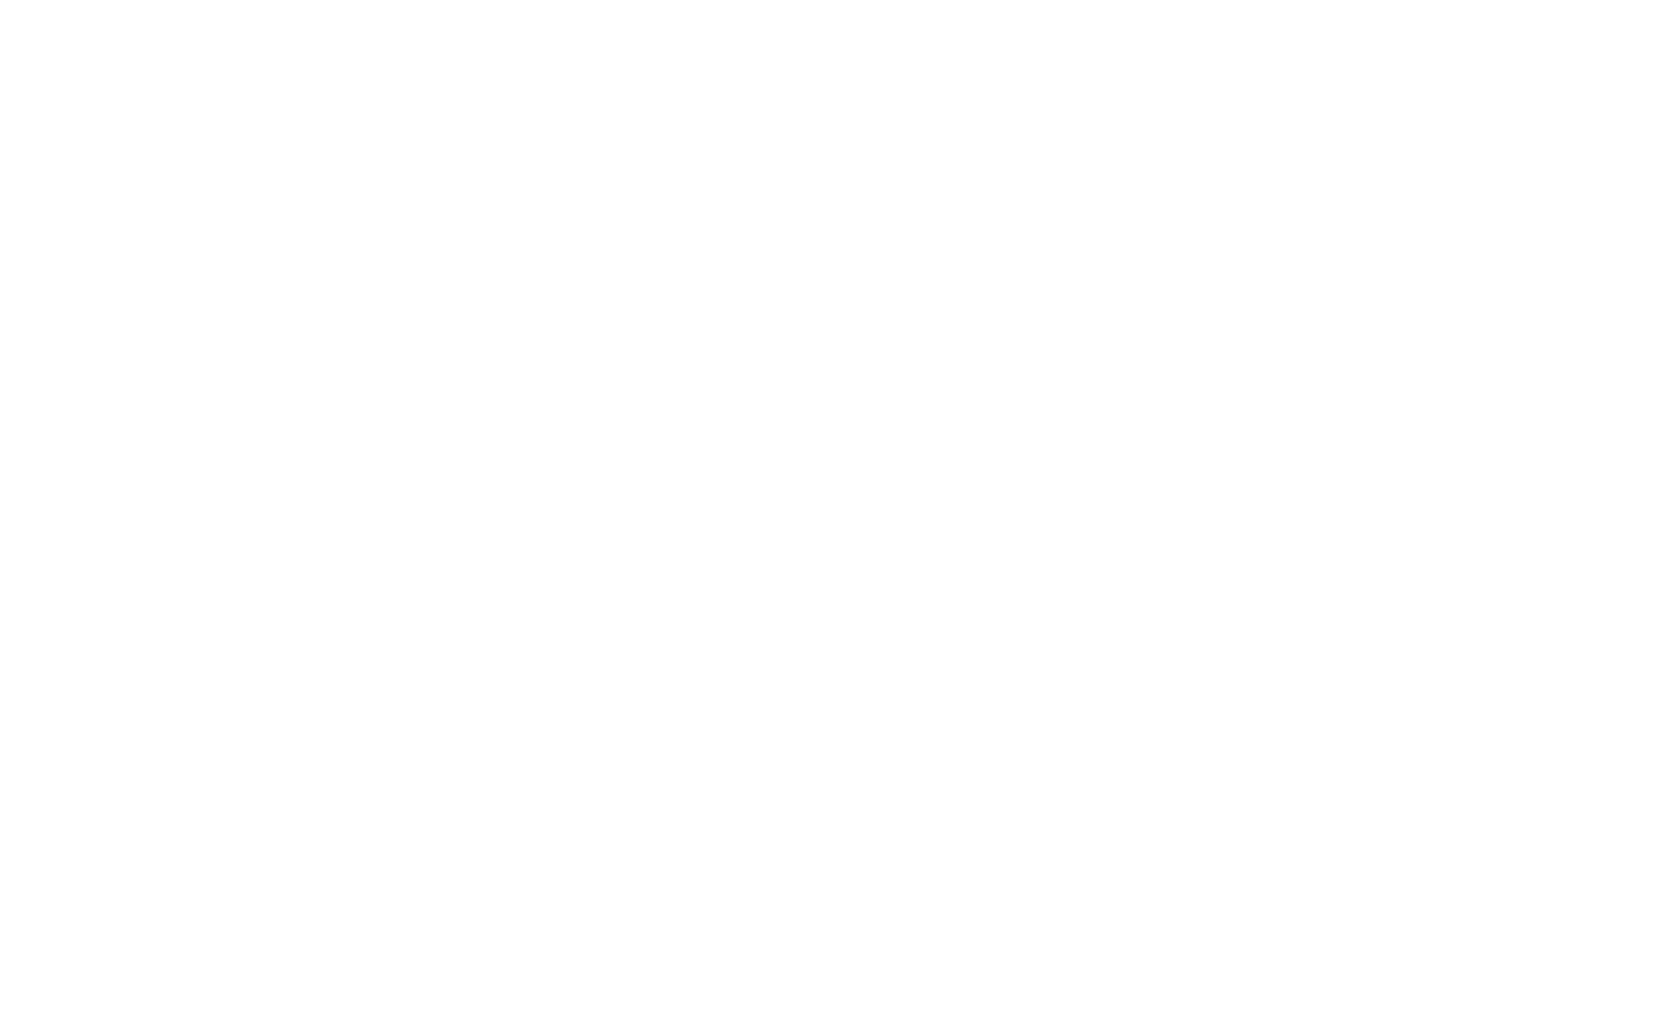 Extra Ed